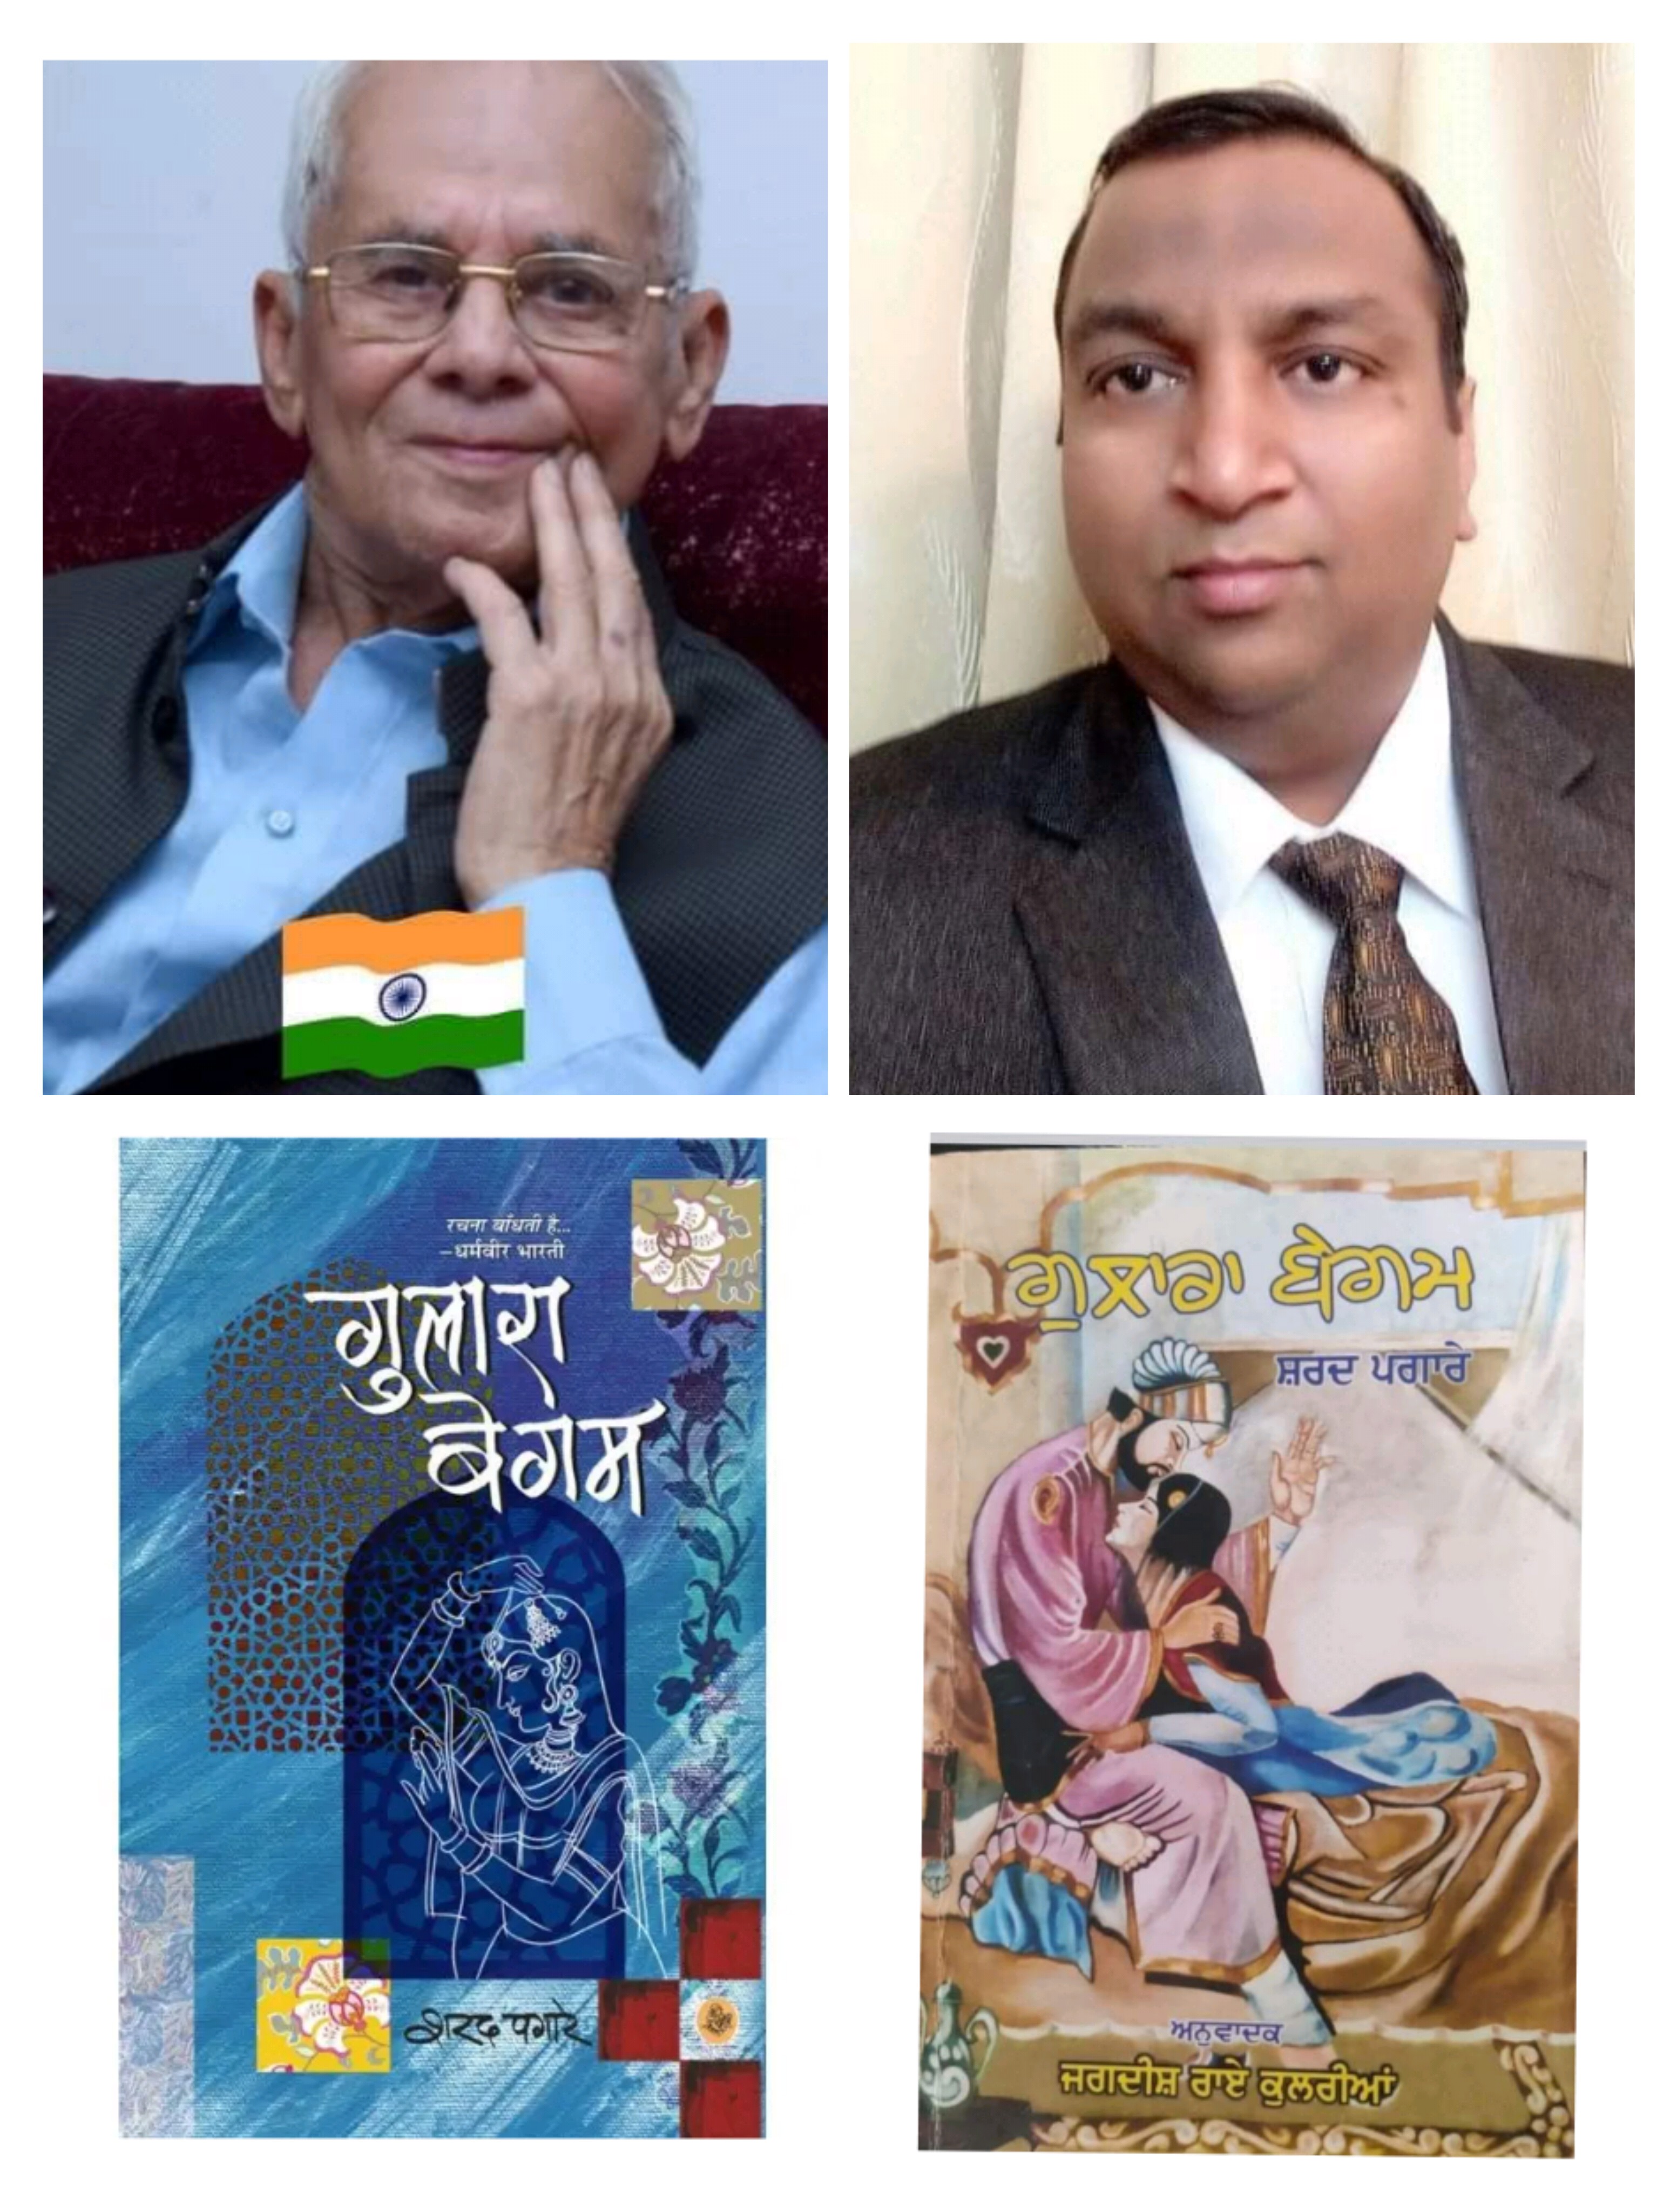 शरद पगारे के सुप्रसिद्ध उपन्यास ‘गुलारा बेगम’ के पंजाबी अनुवाद को साहित्य अकादमी पुरस्कार